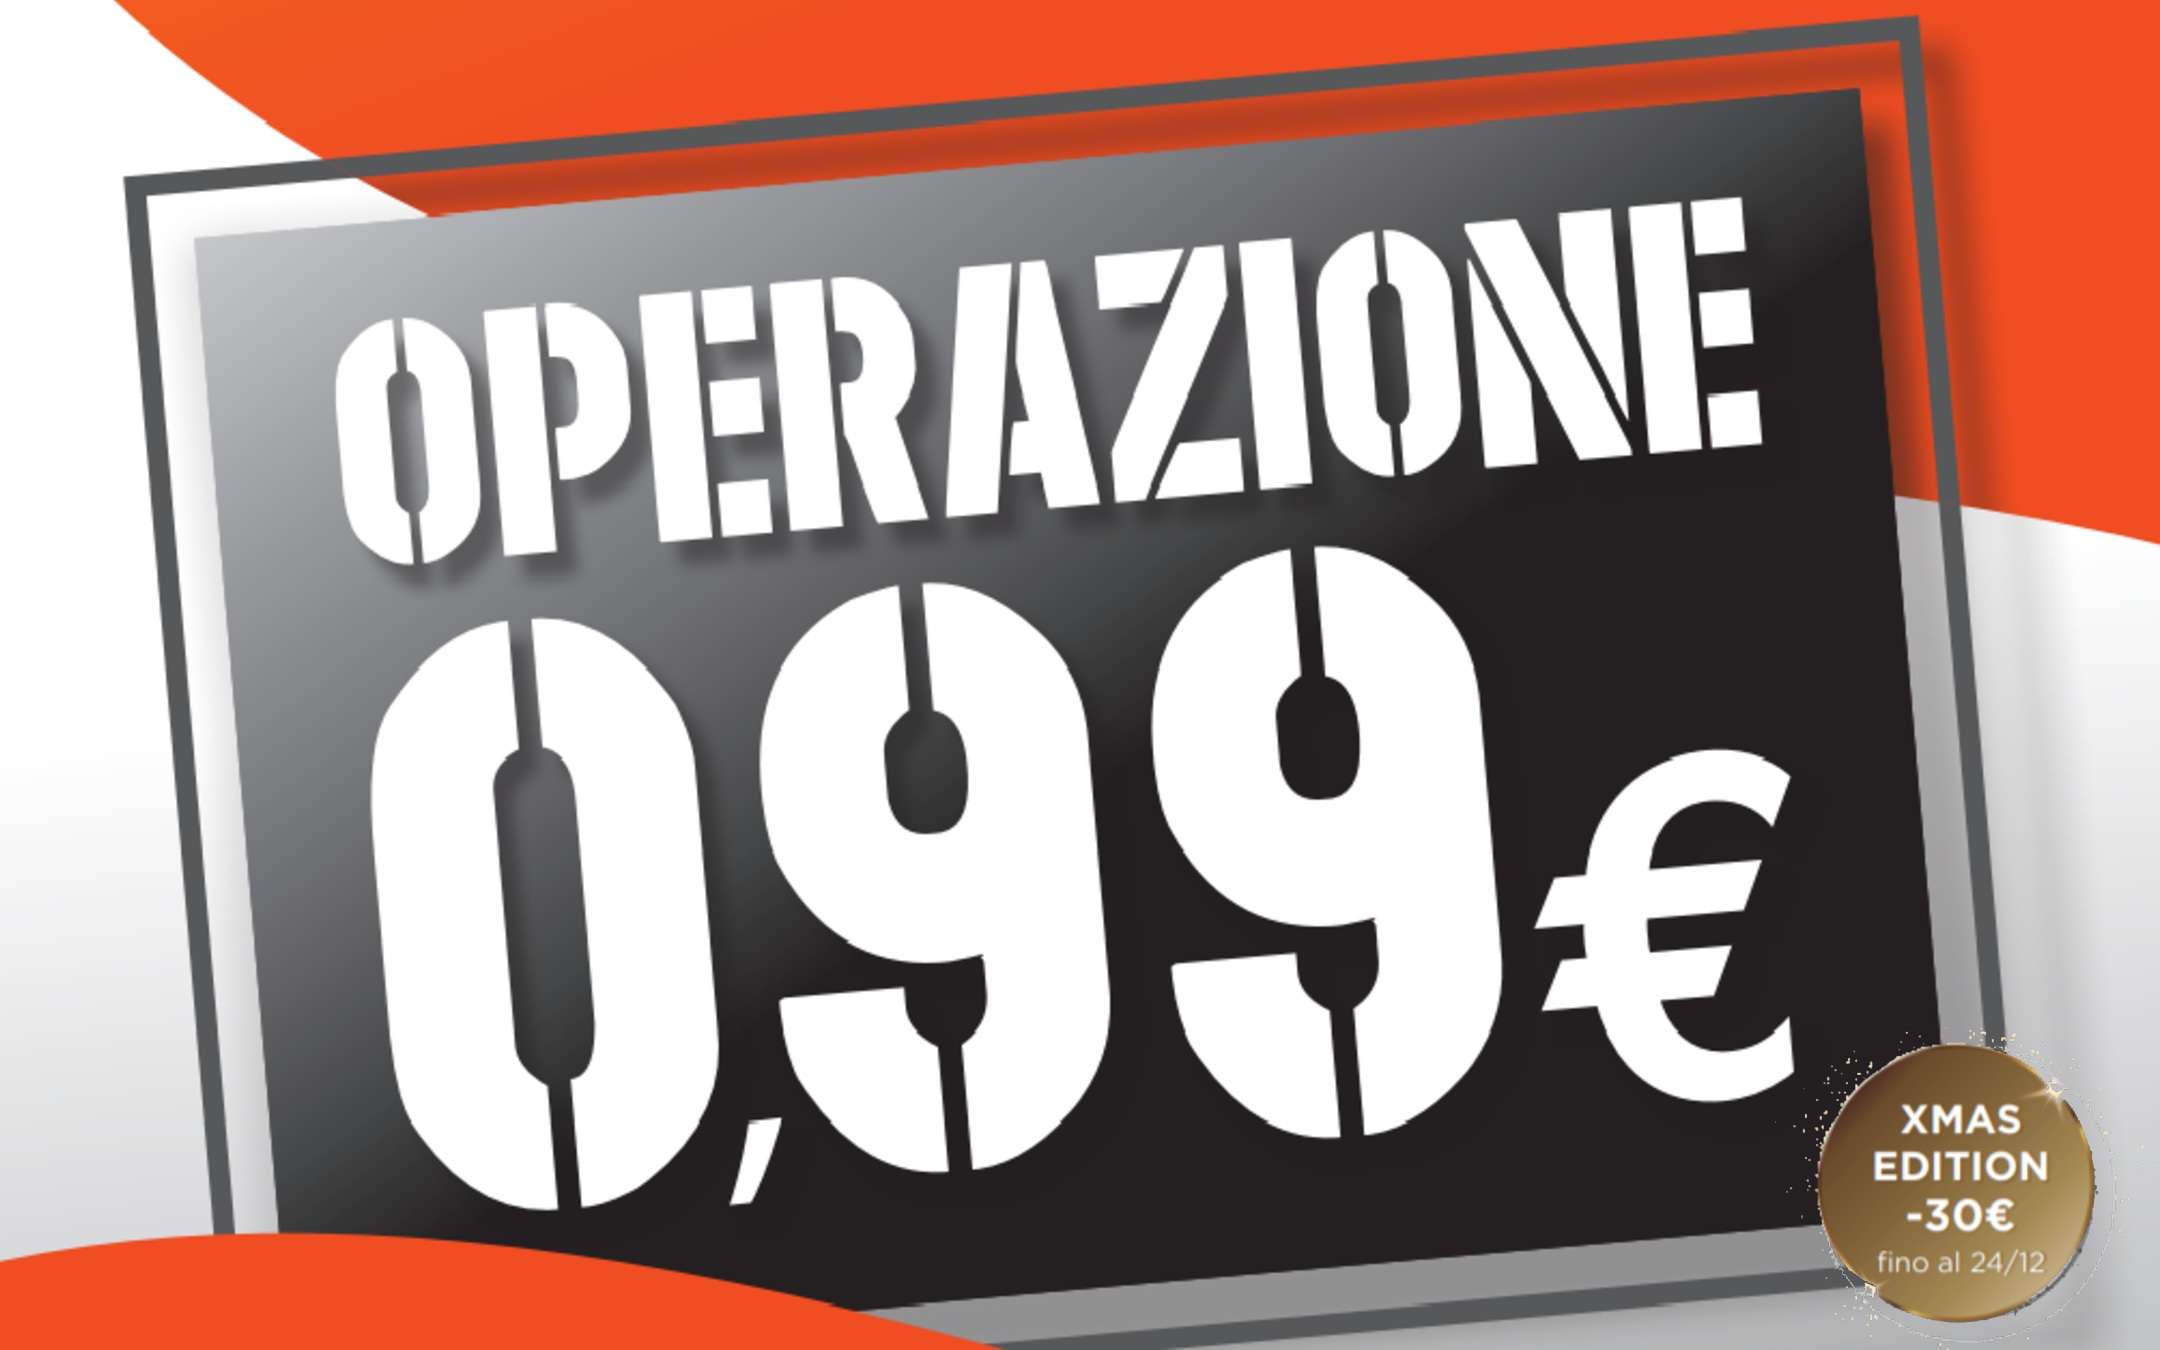 Operazione 0,99€ XMas Edition: smartphone in promo